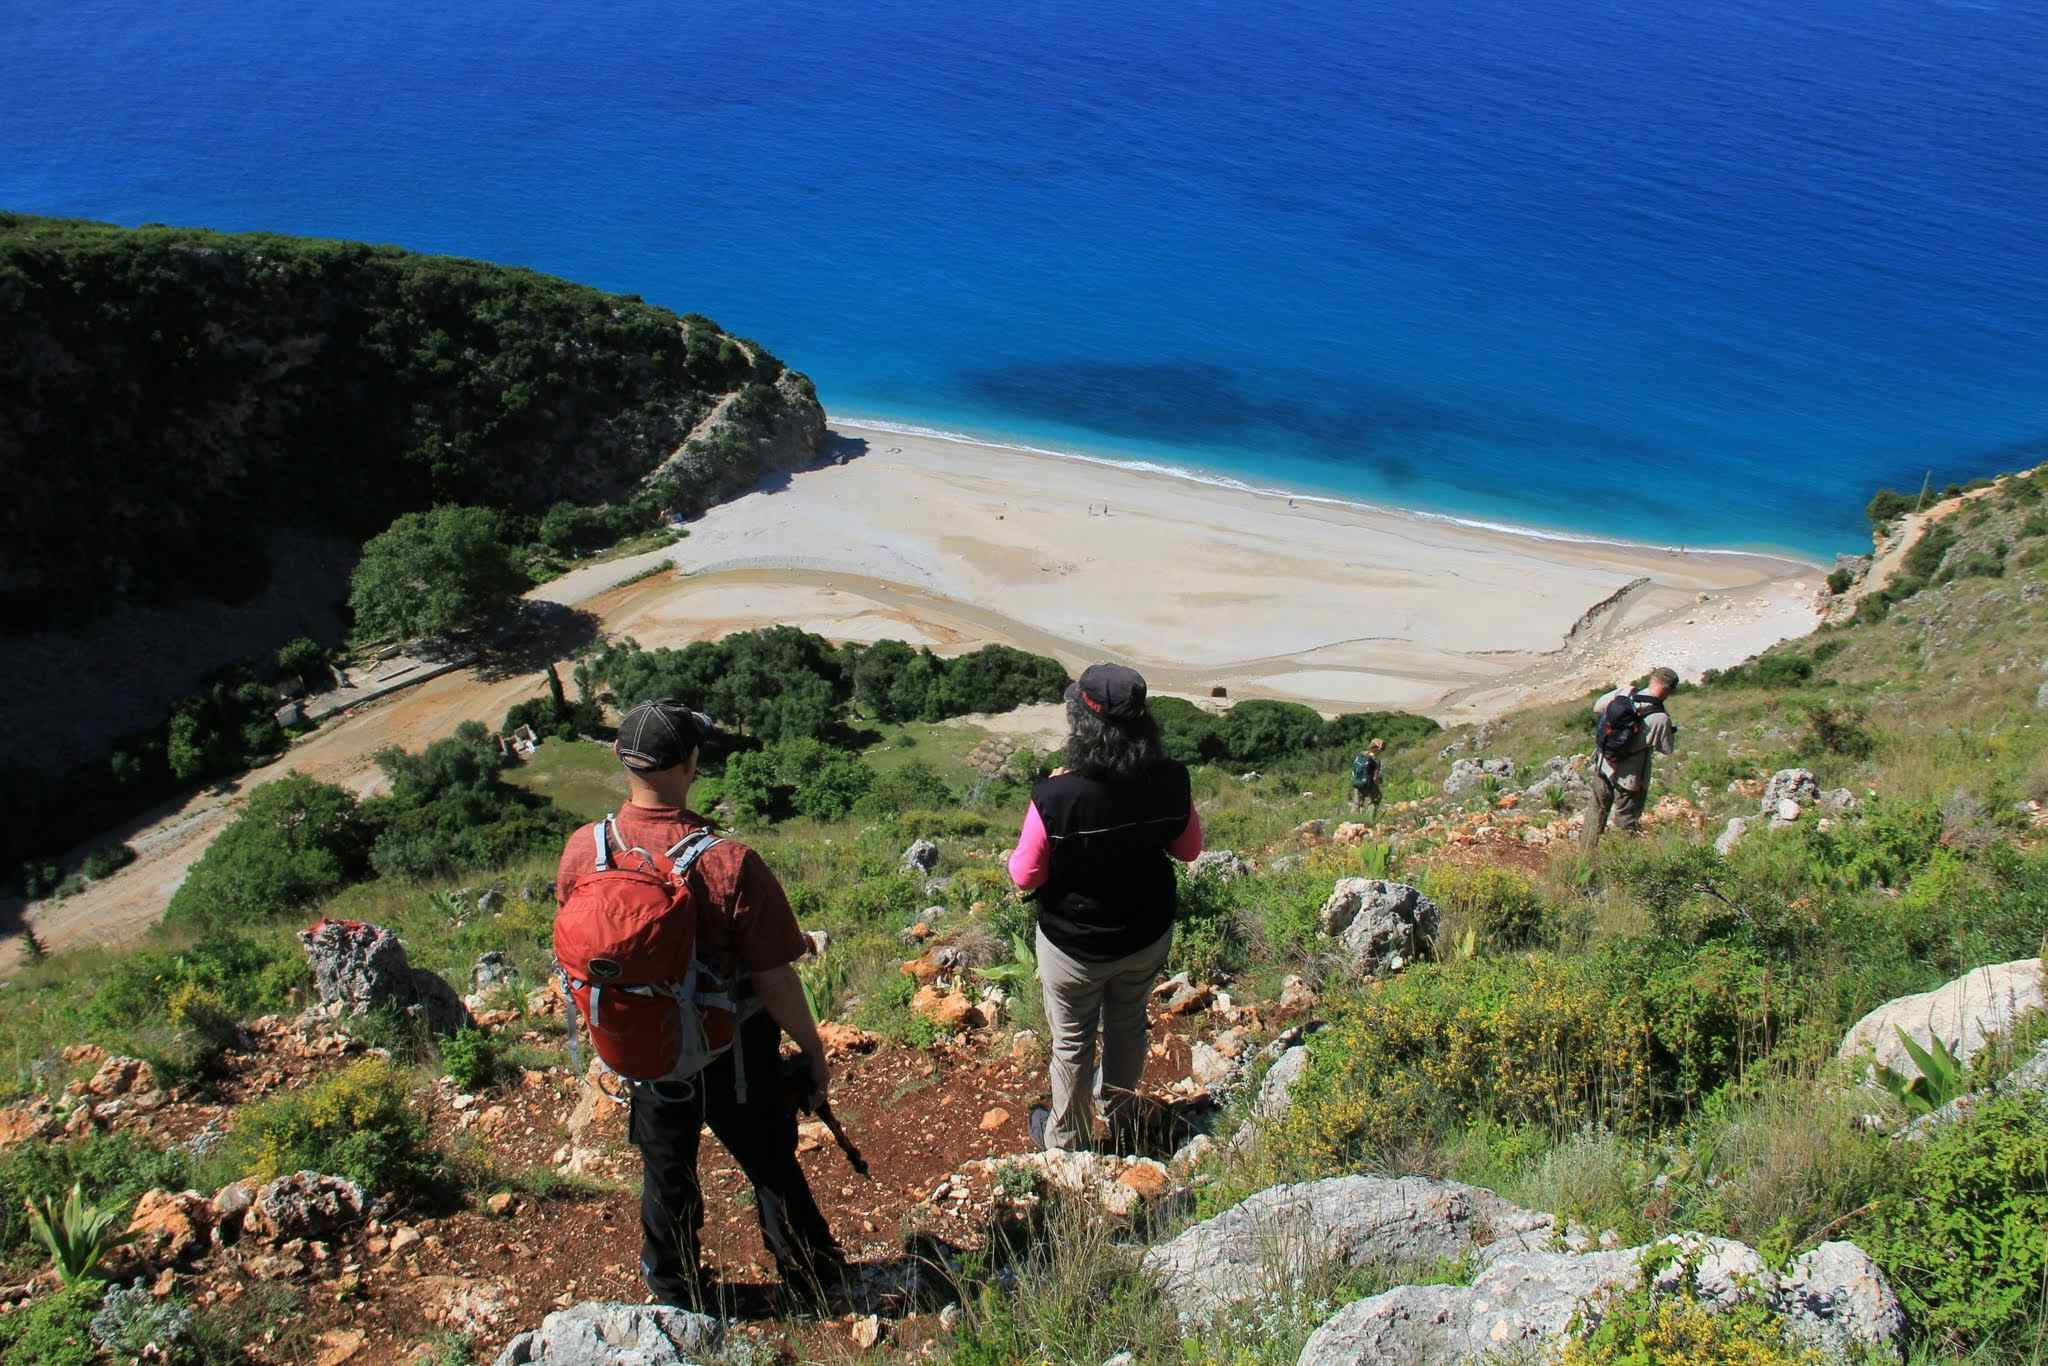 Albania coastal trail. Photo: Host/Zbulo